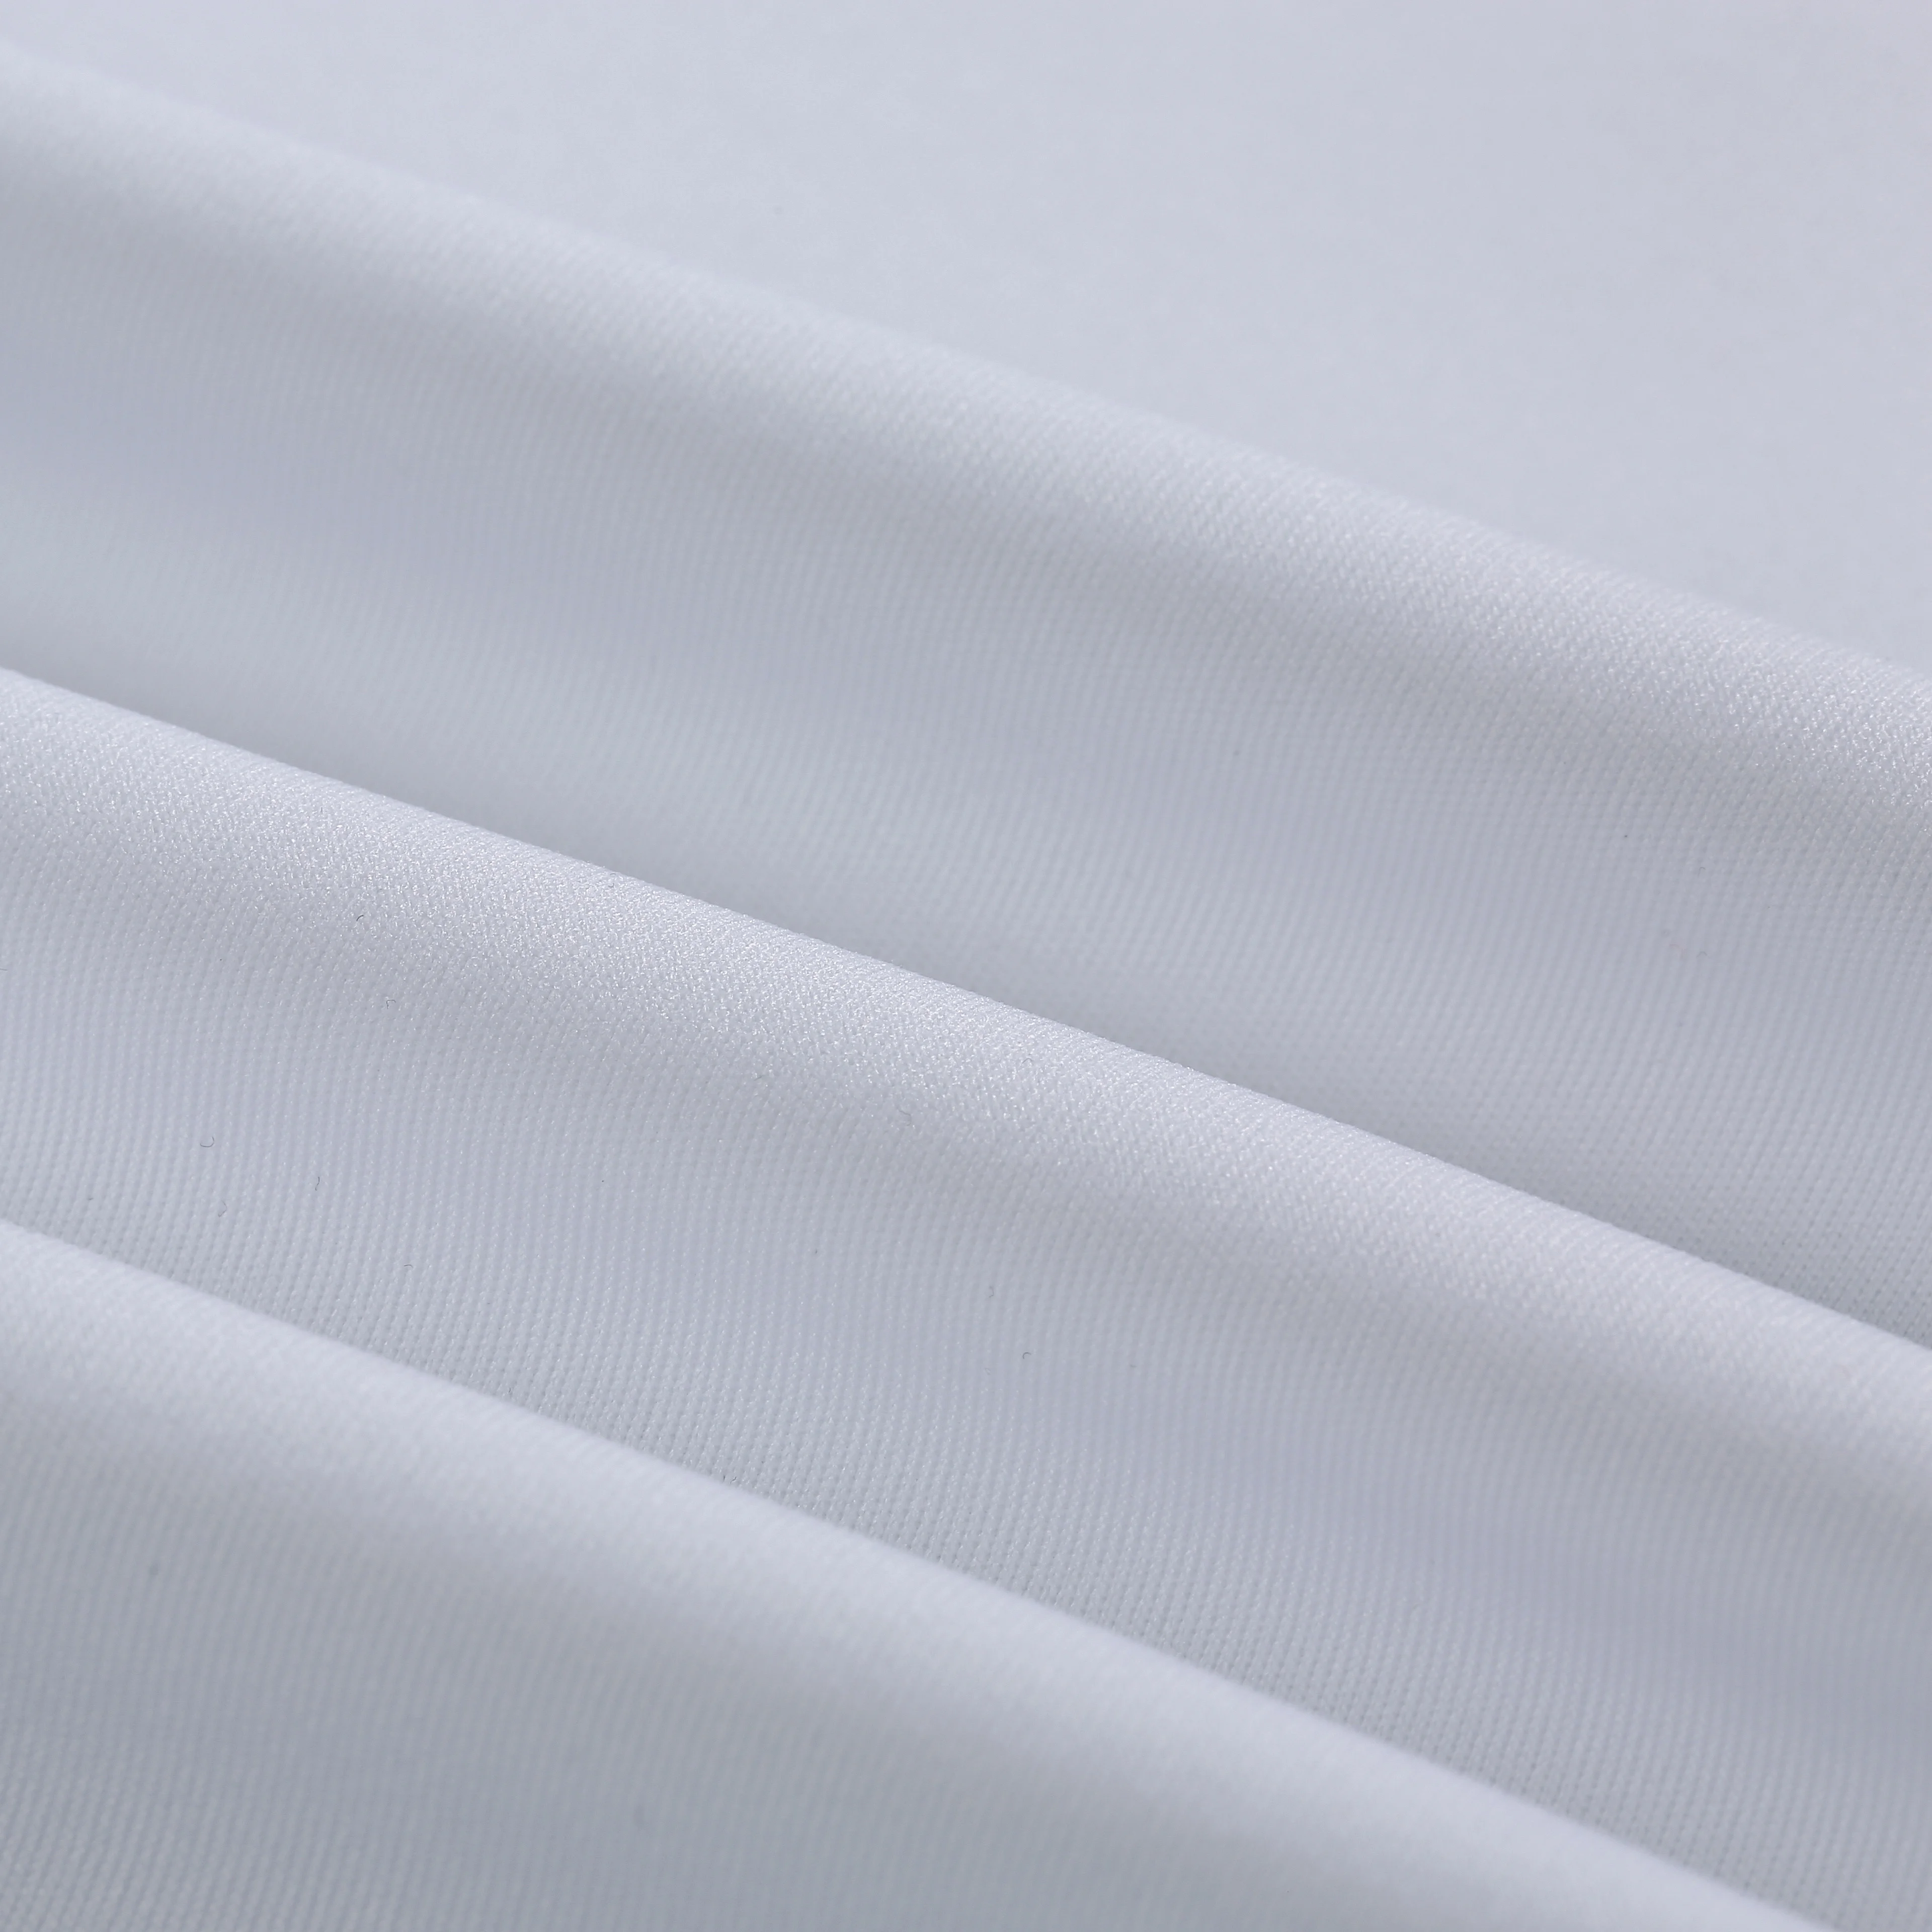 
Polyester spandex elastane 4 way stretch fabric for sportswear leggings 